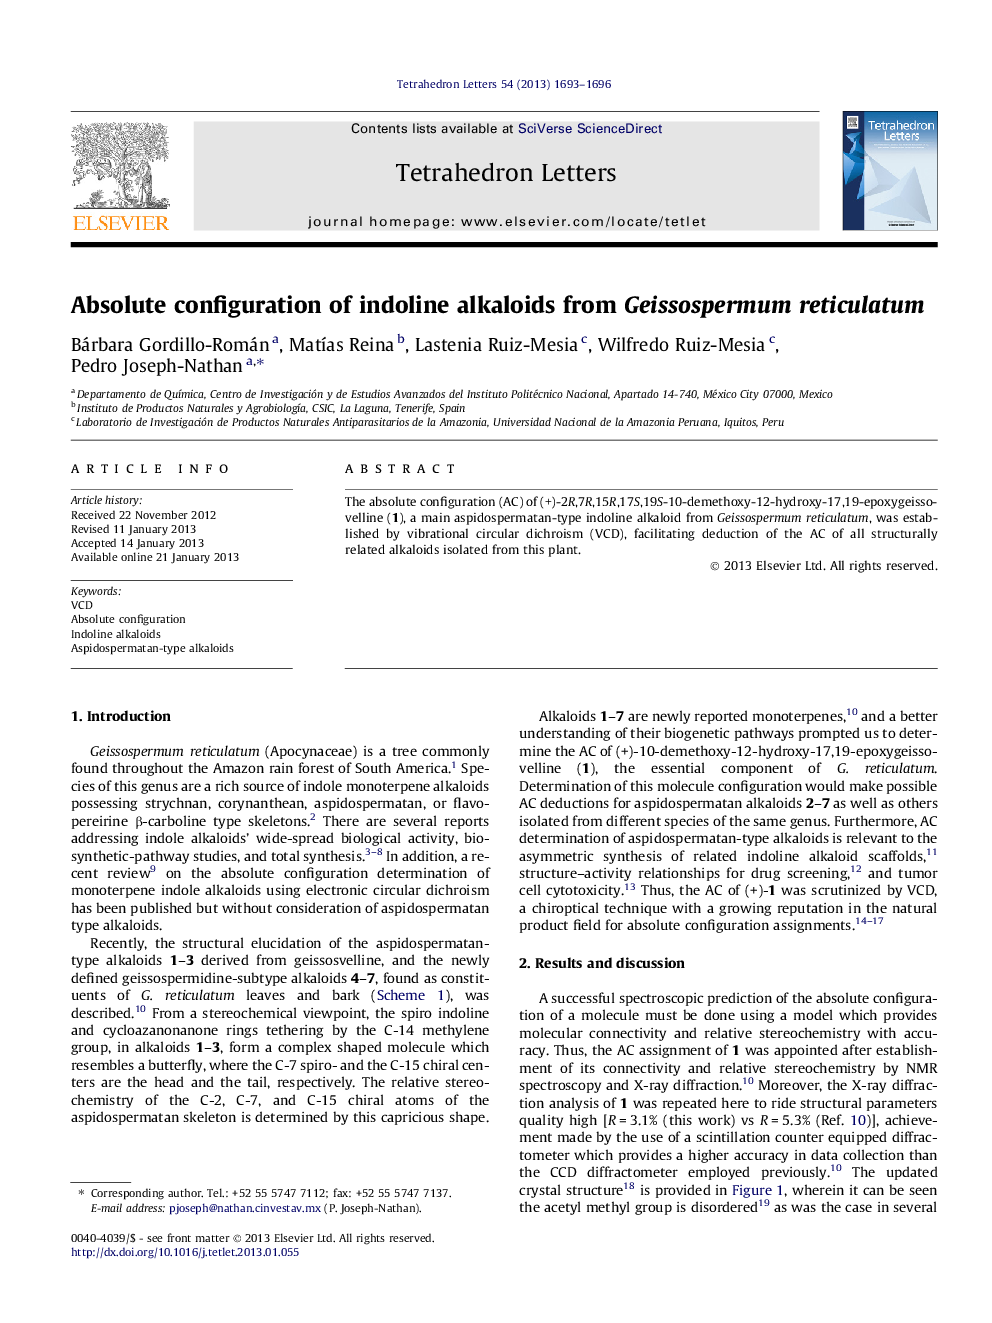 Absolute configuration of indoline alkaloids from Geissospermum reticulatum